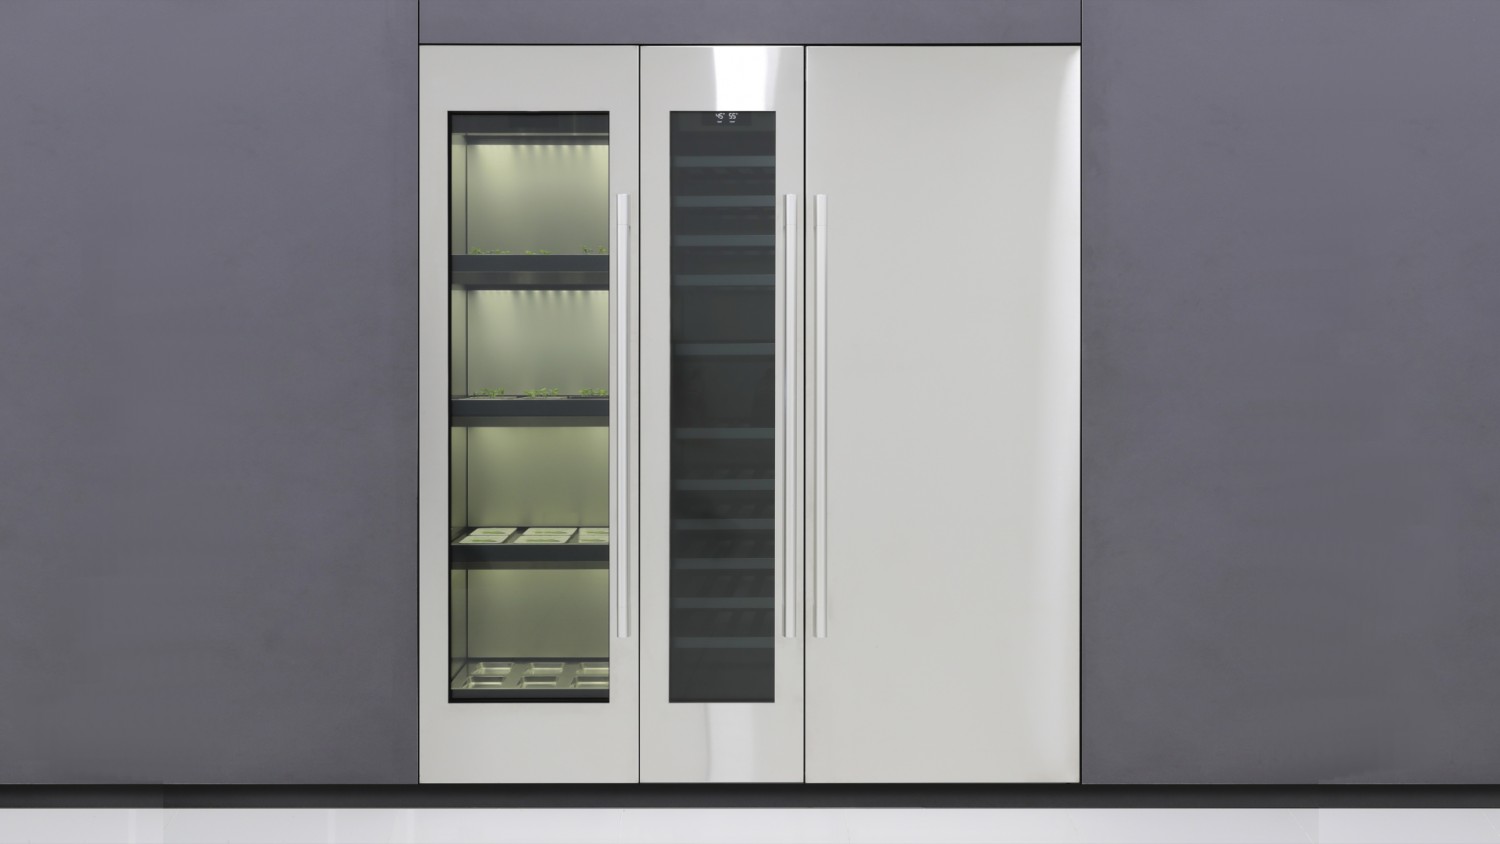 LG анонсировала домашнюю шкаф-теплицу для выращивания зелени и овощей